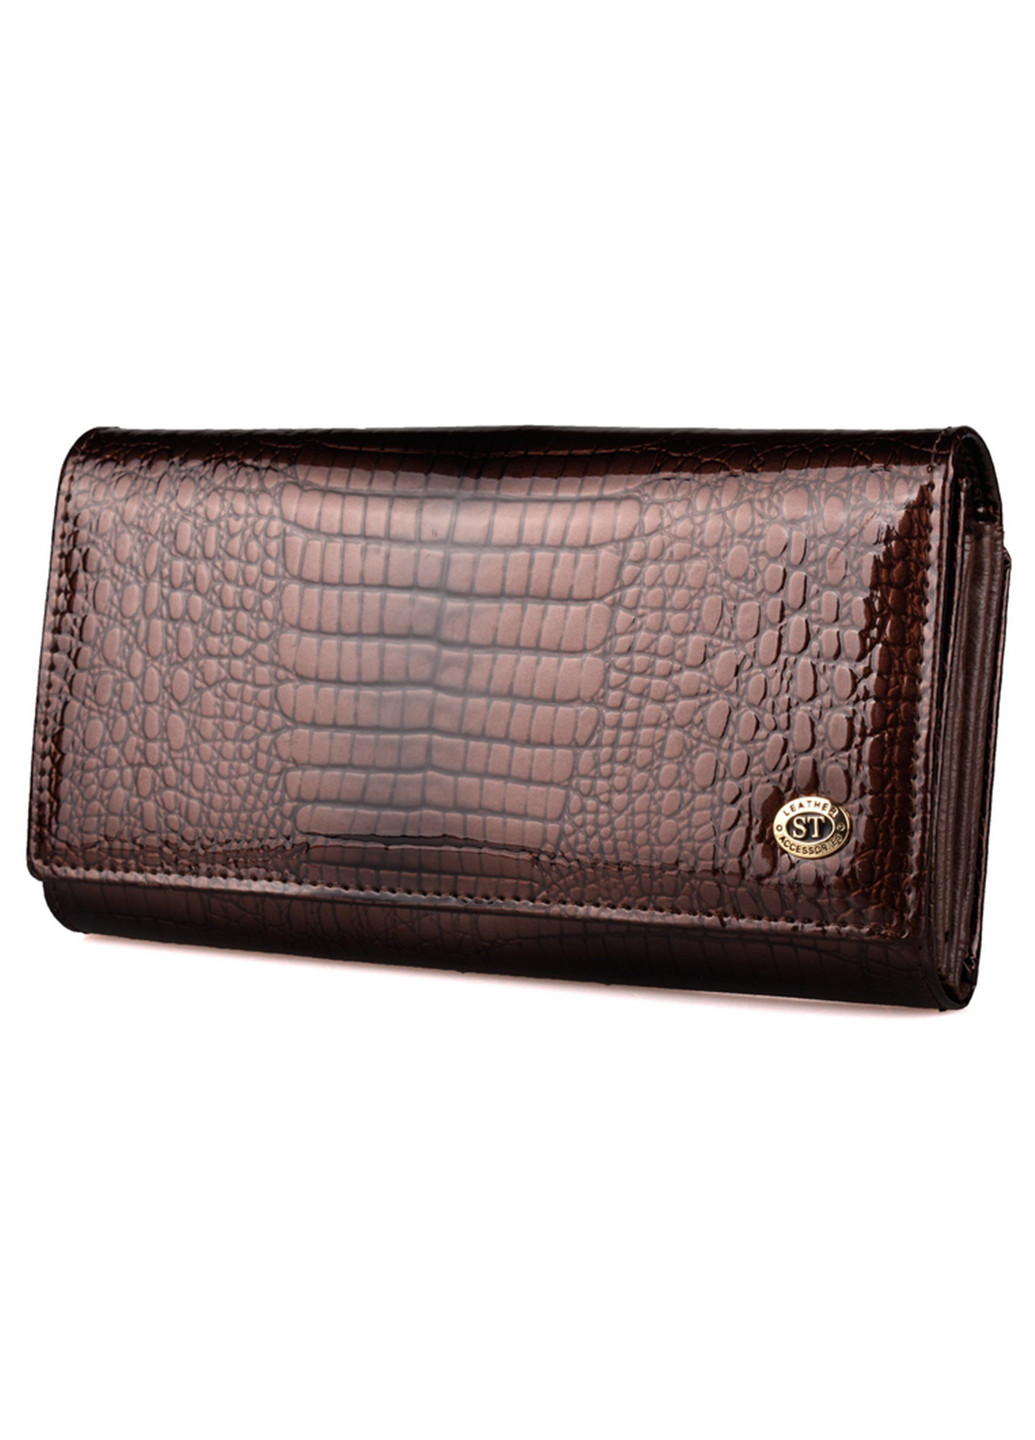 Жіночий шкіряний гаманець з візитницею ST s9001a (277359154)